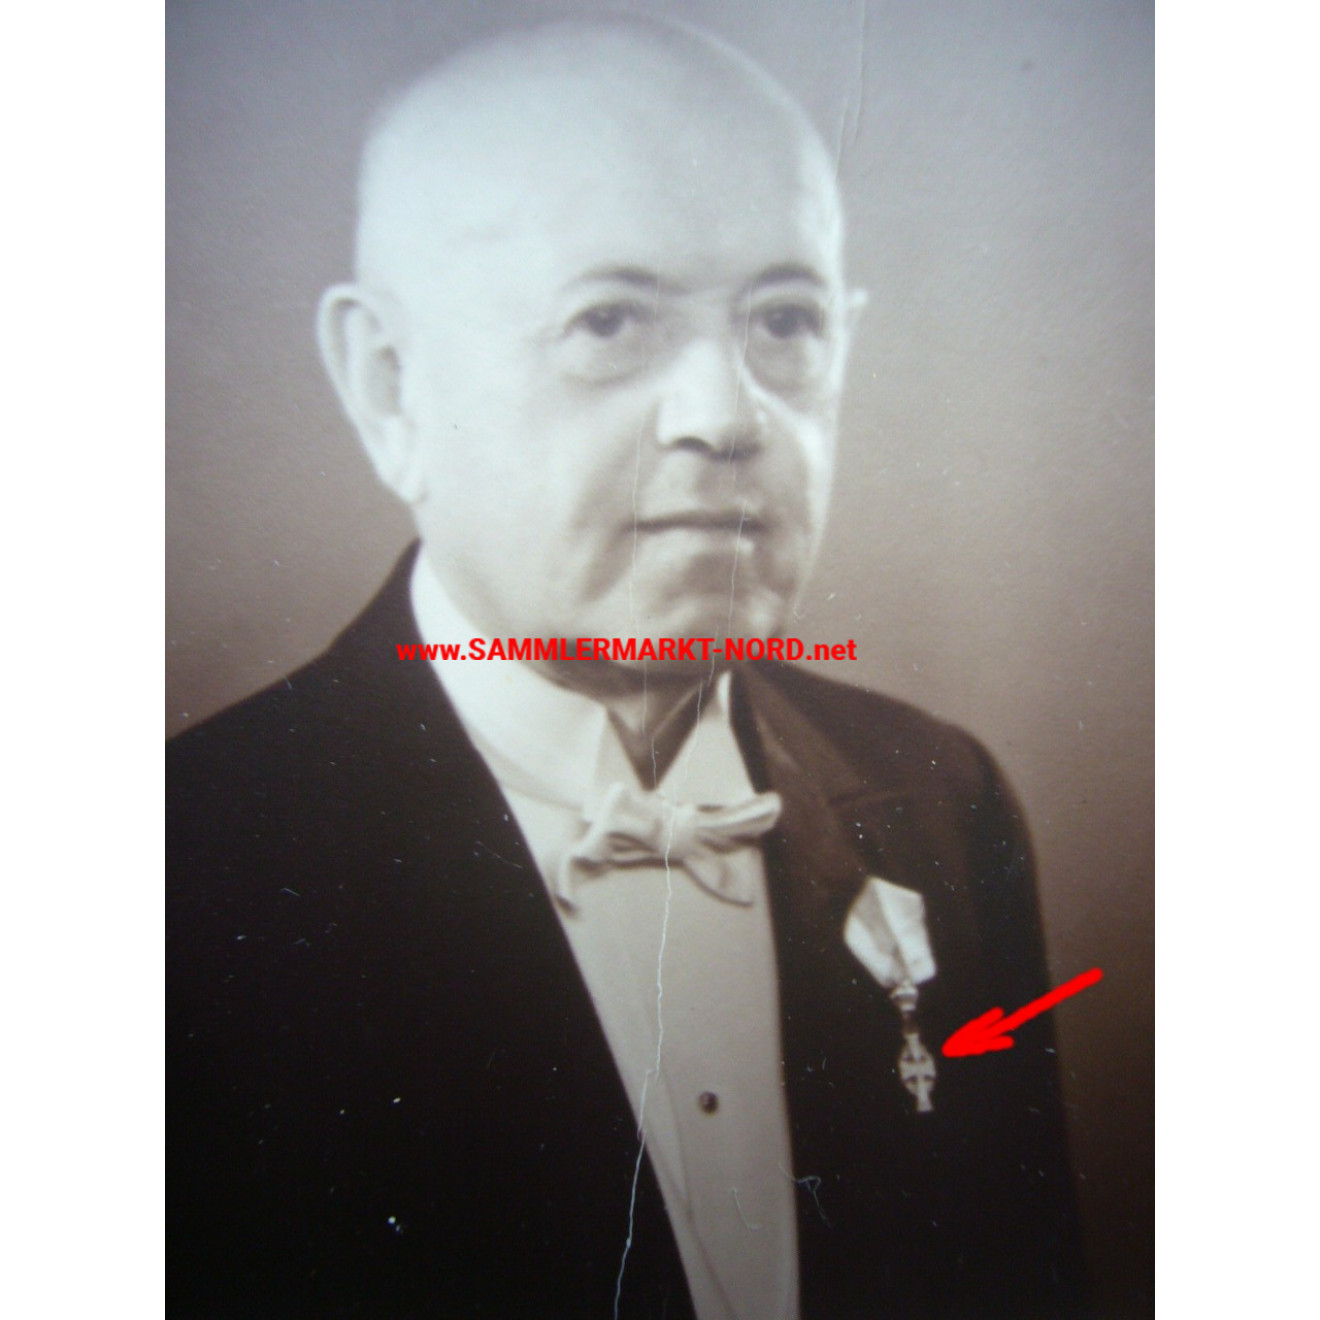 Dänemark - Portraitfoto 1949 - Träger des Dannebrogordens